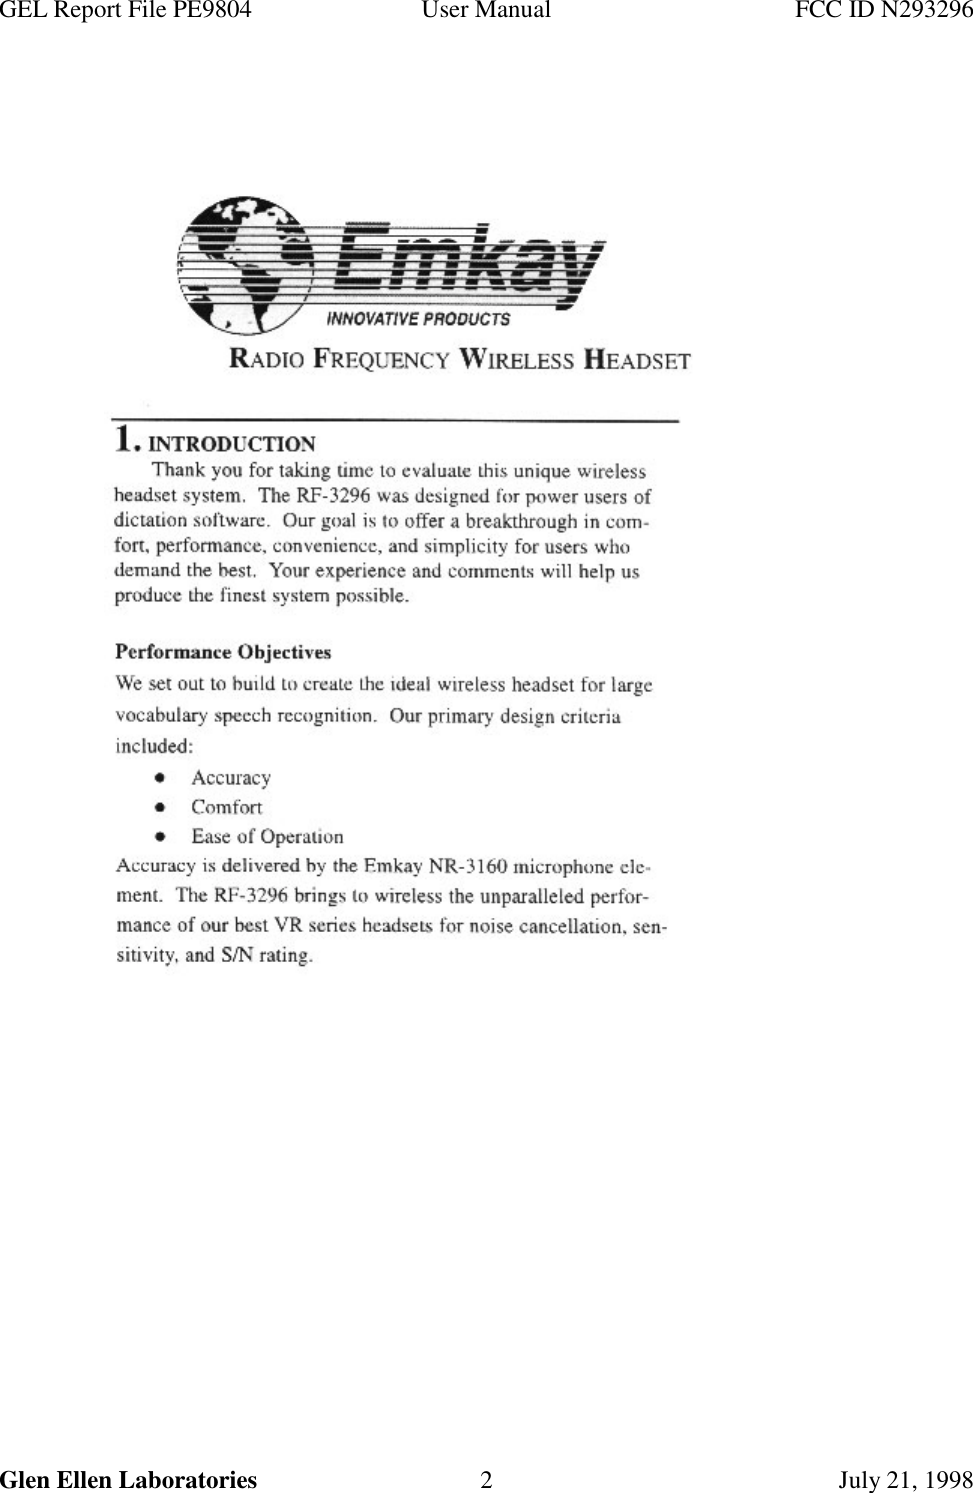 GEL Report File PE9804 User Manual FCC ID N293296Glen Ellen Laboratories 2 July 21, 1998